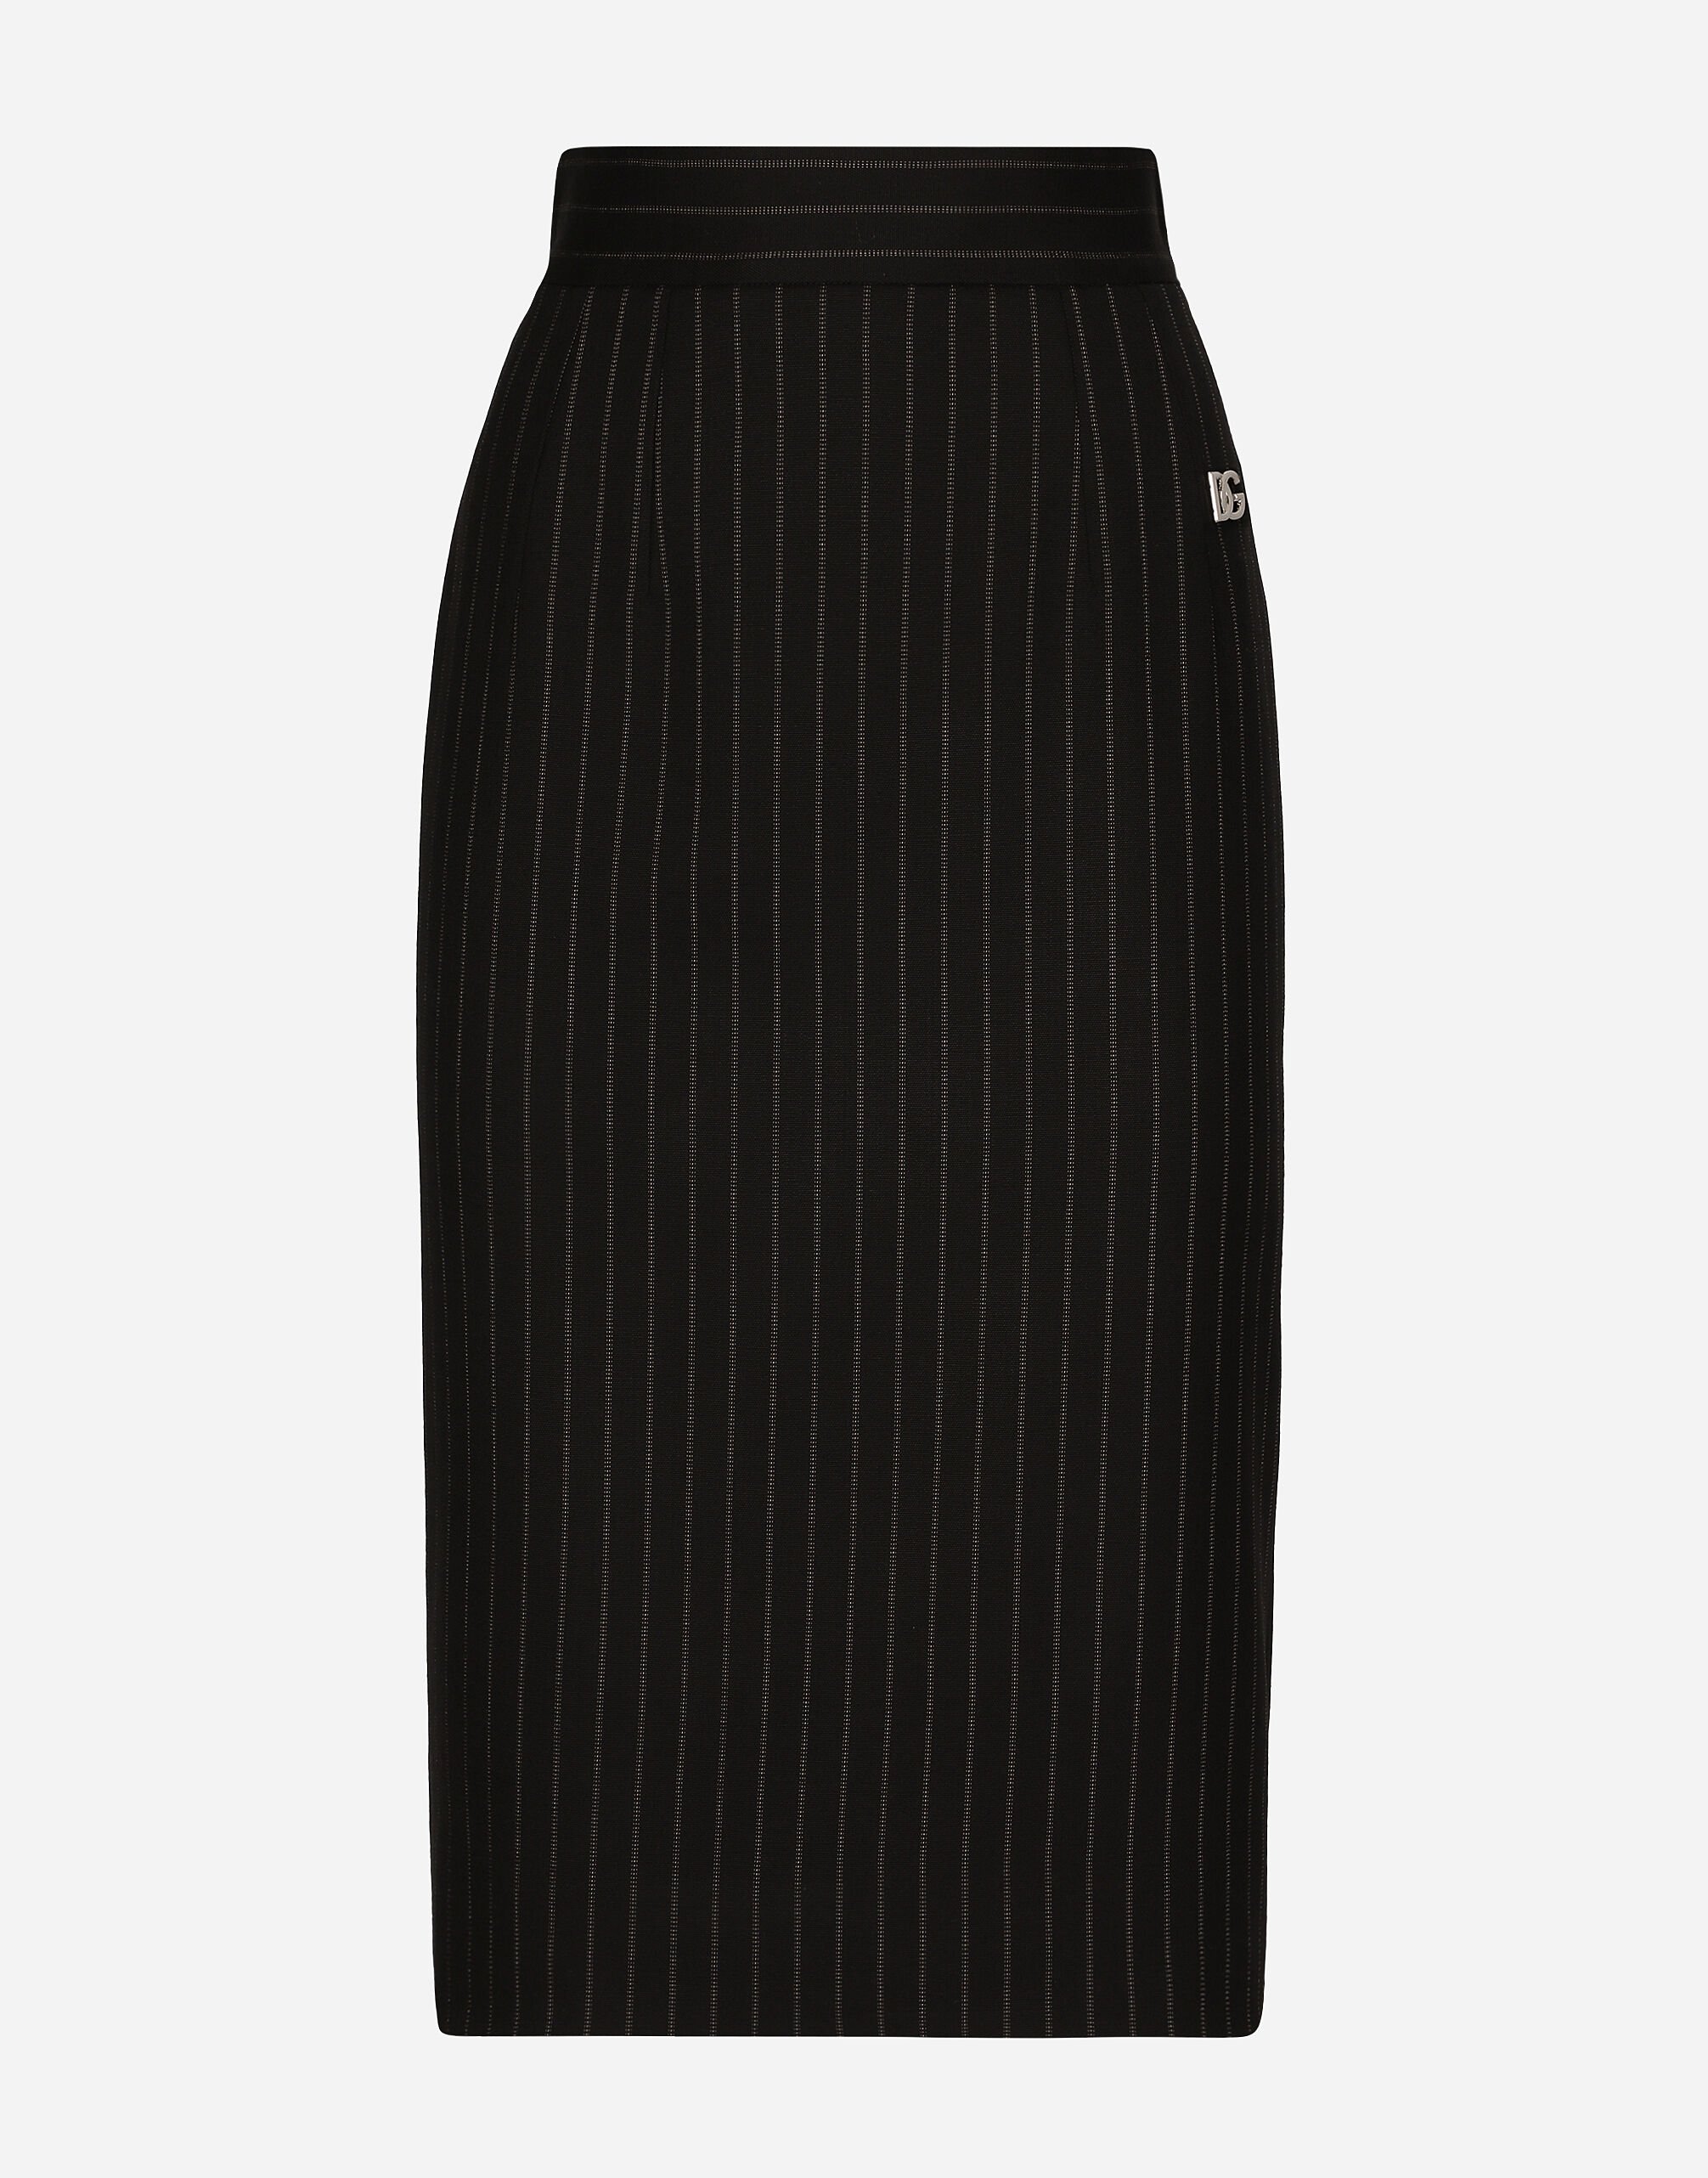 Dolce & Gabbana Short straight-cut pinstripe wool skirt Black F6JFFTMLRAB